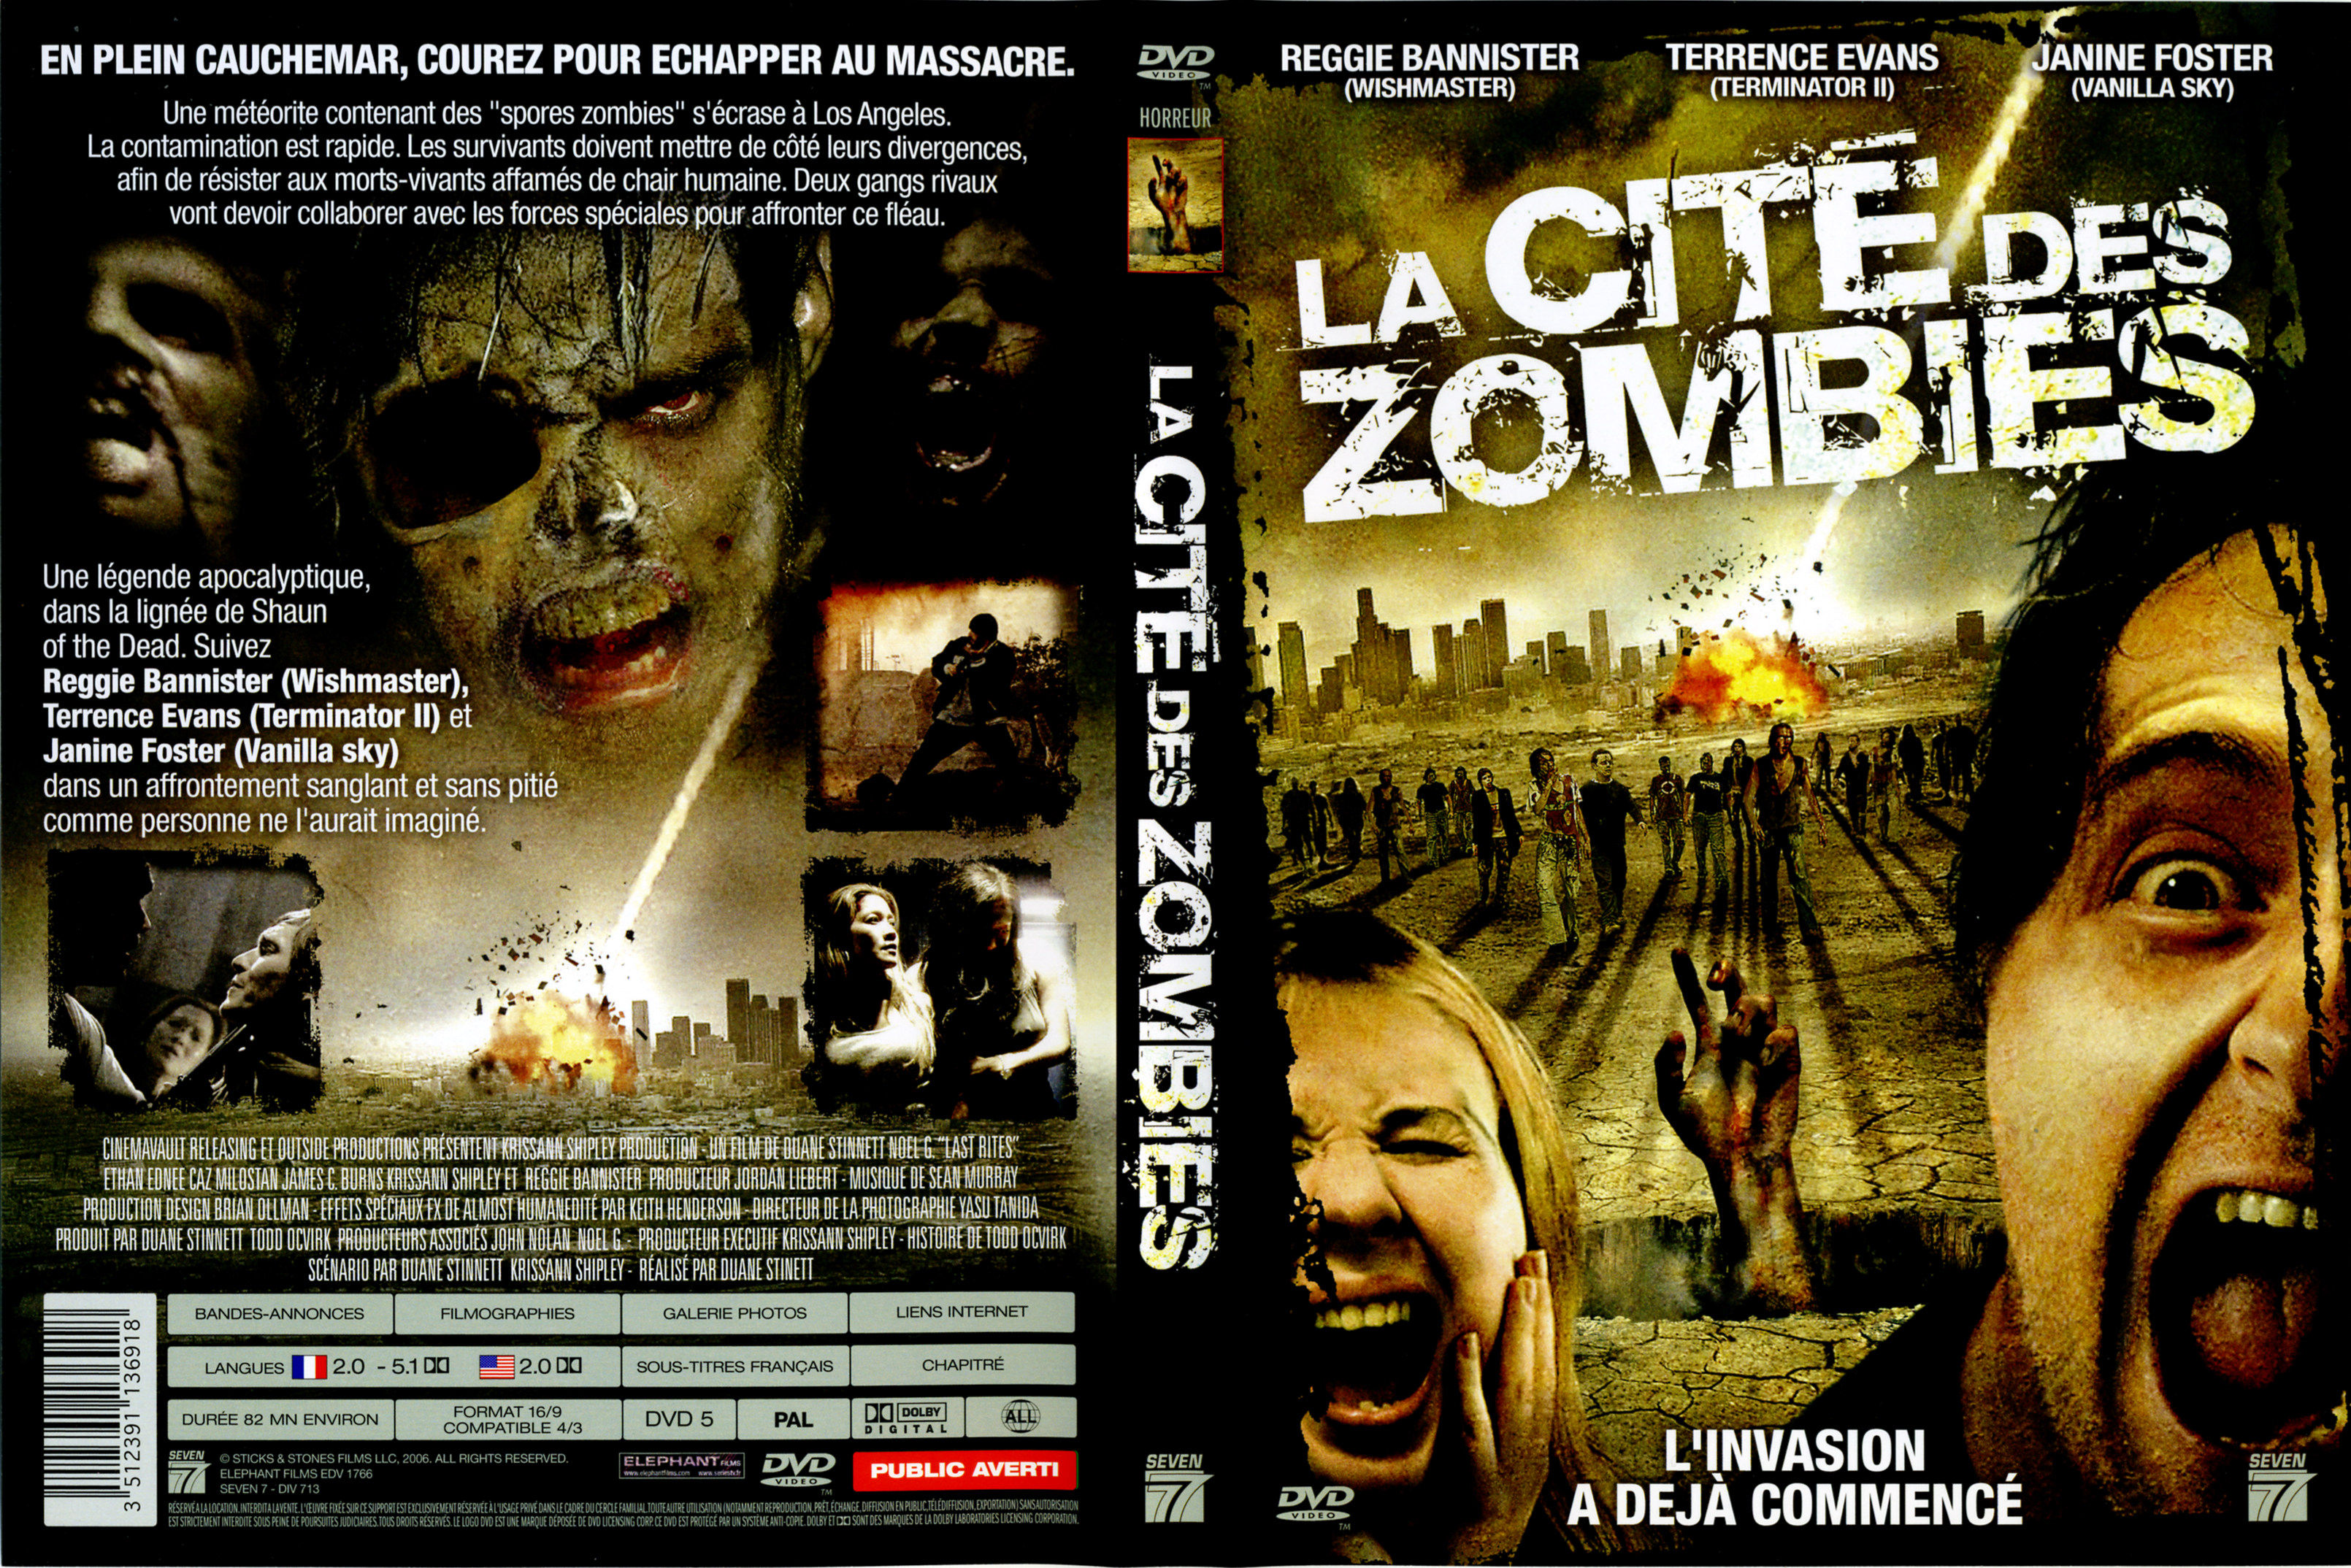 Jaquette DVD La cit des zombies